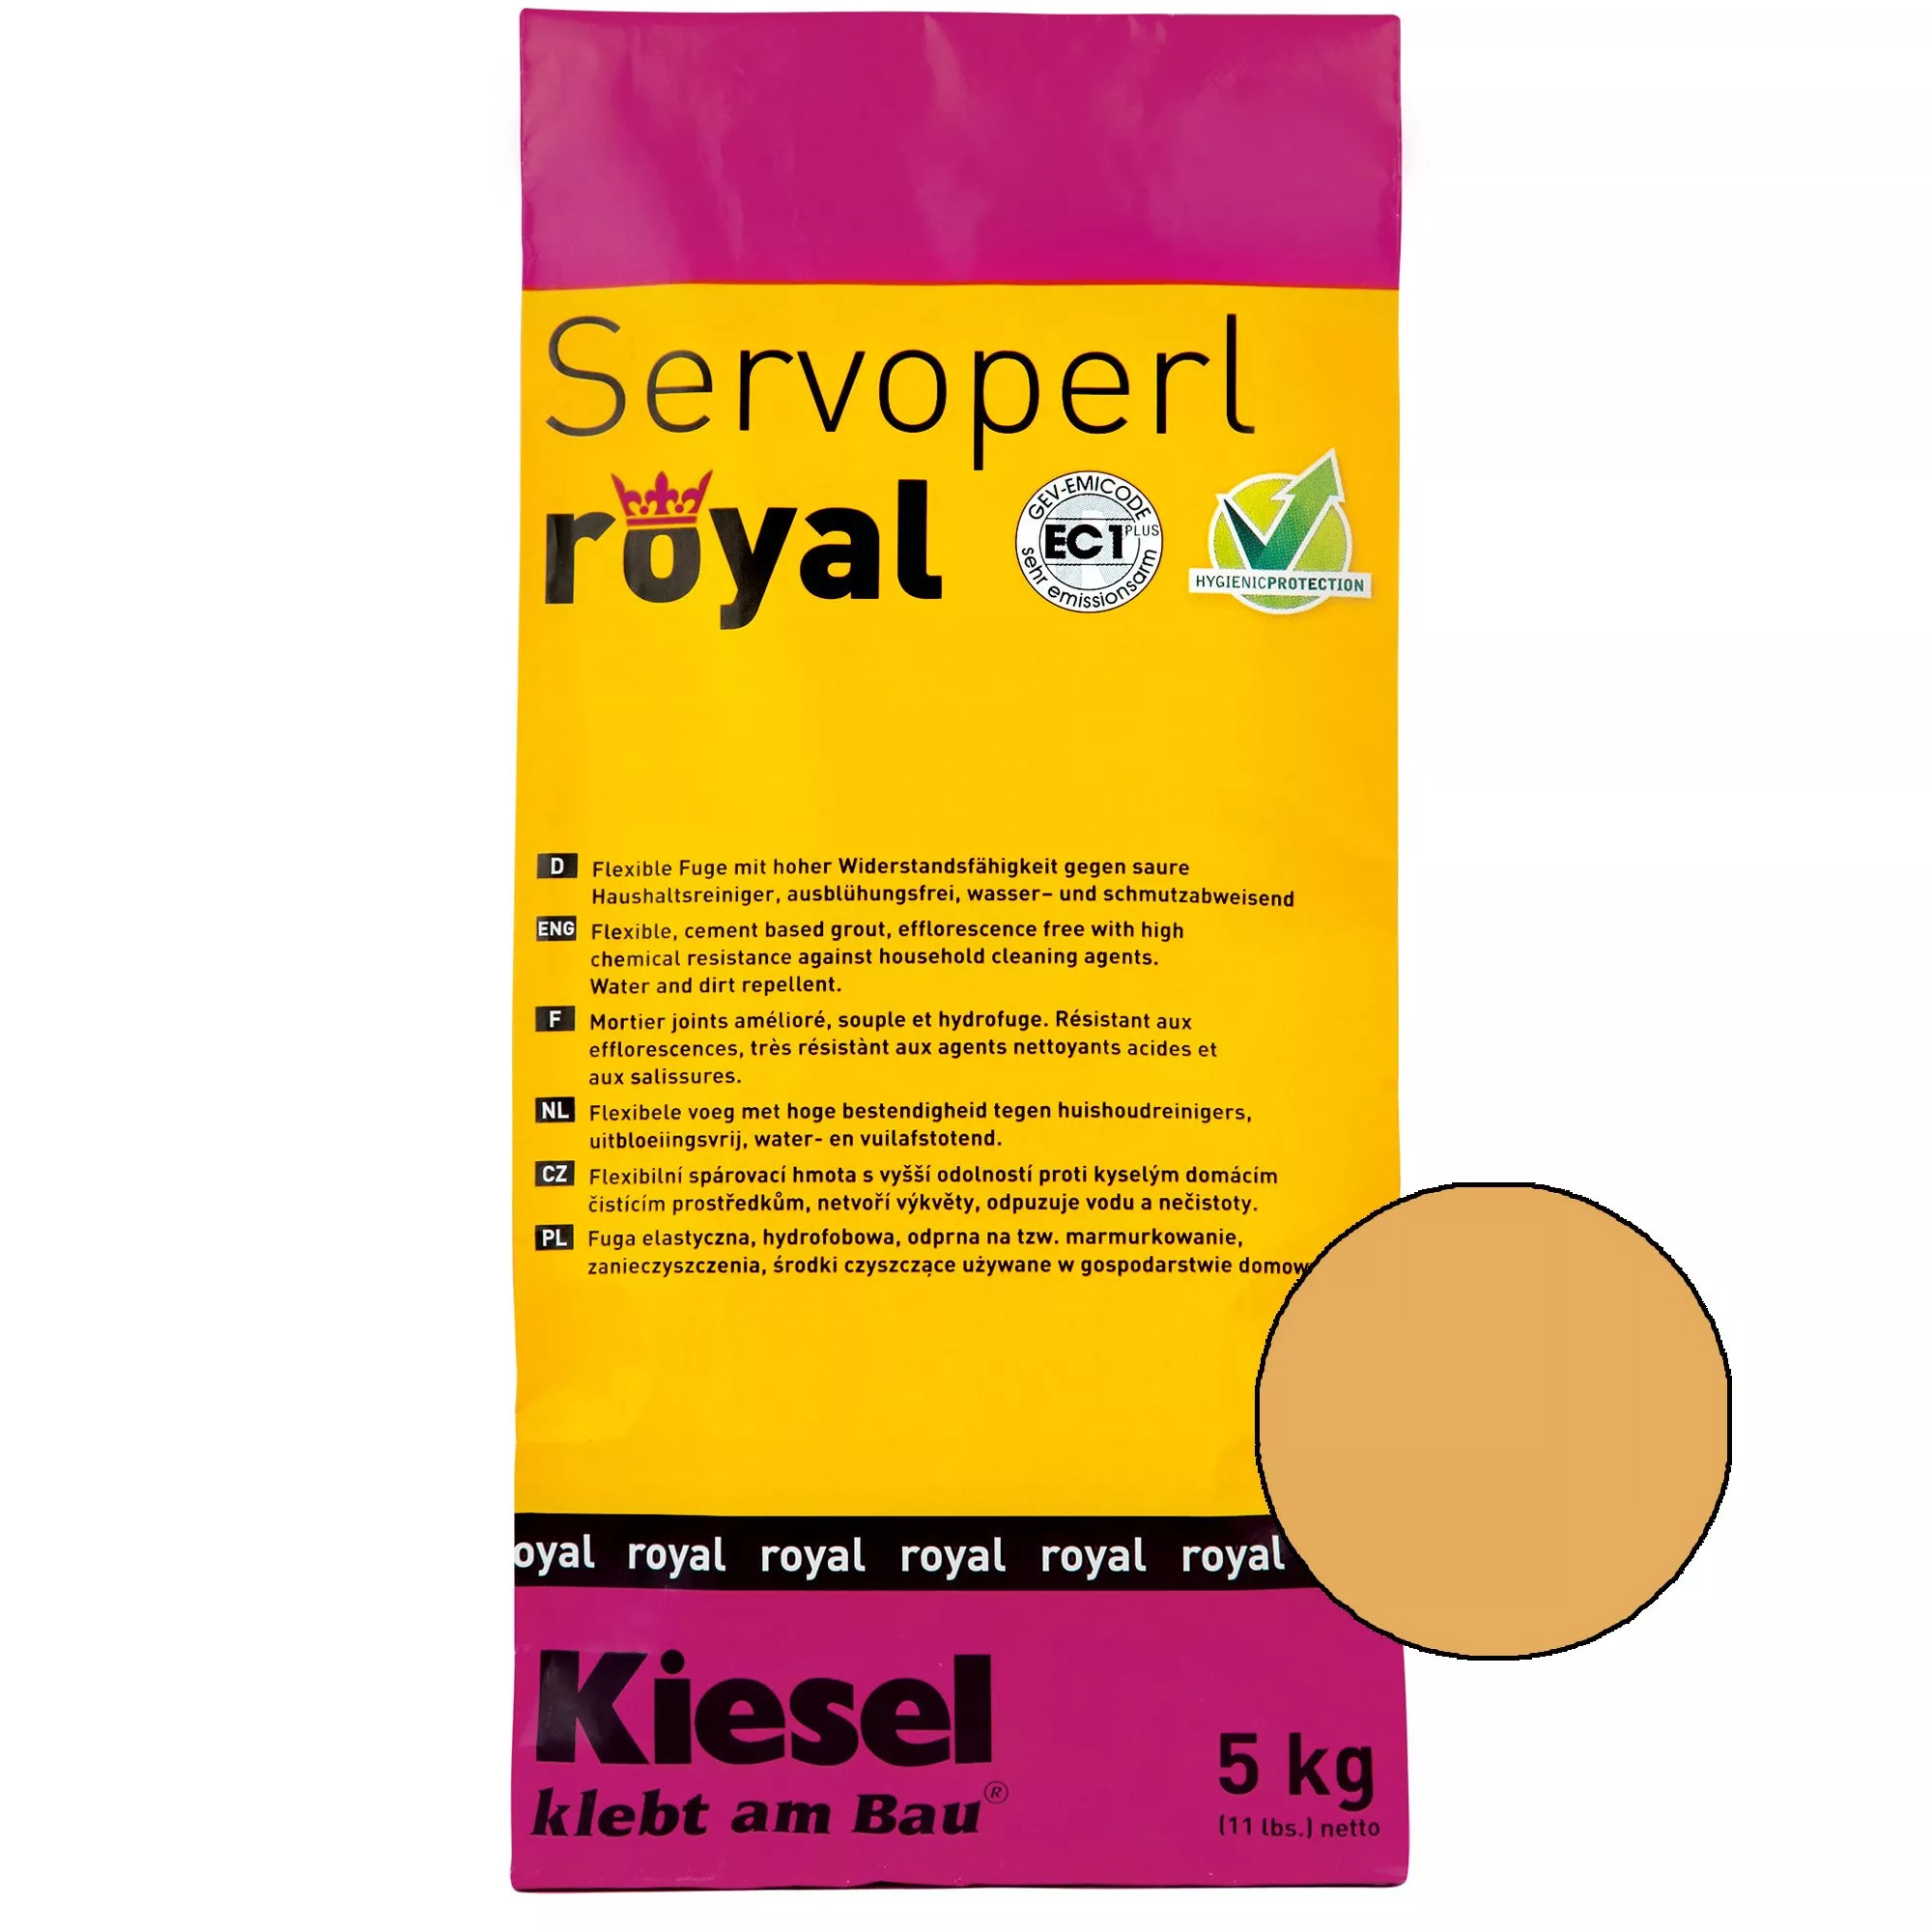 Kiesel Servoperl royal - Flexible, wasser- und schmutzabweisende Fuge (5KG Sahara)